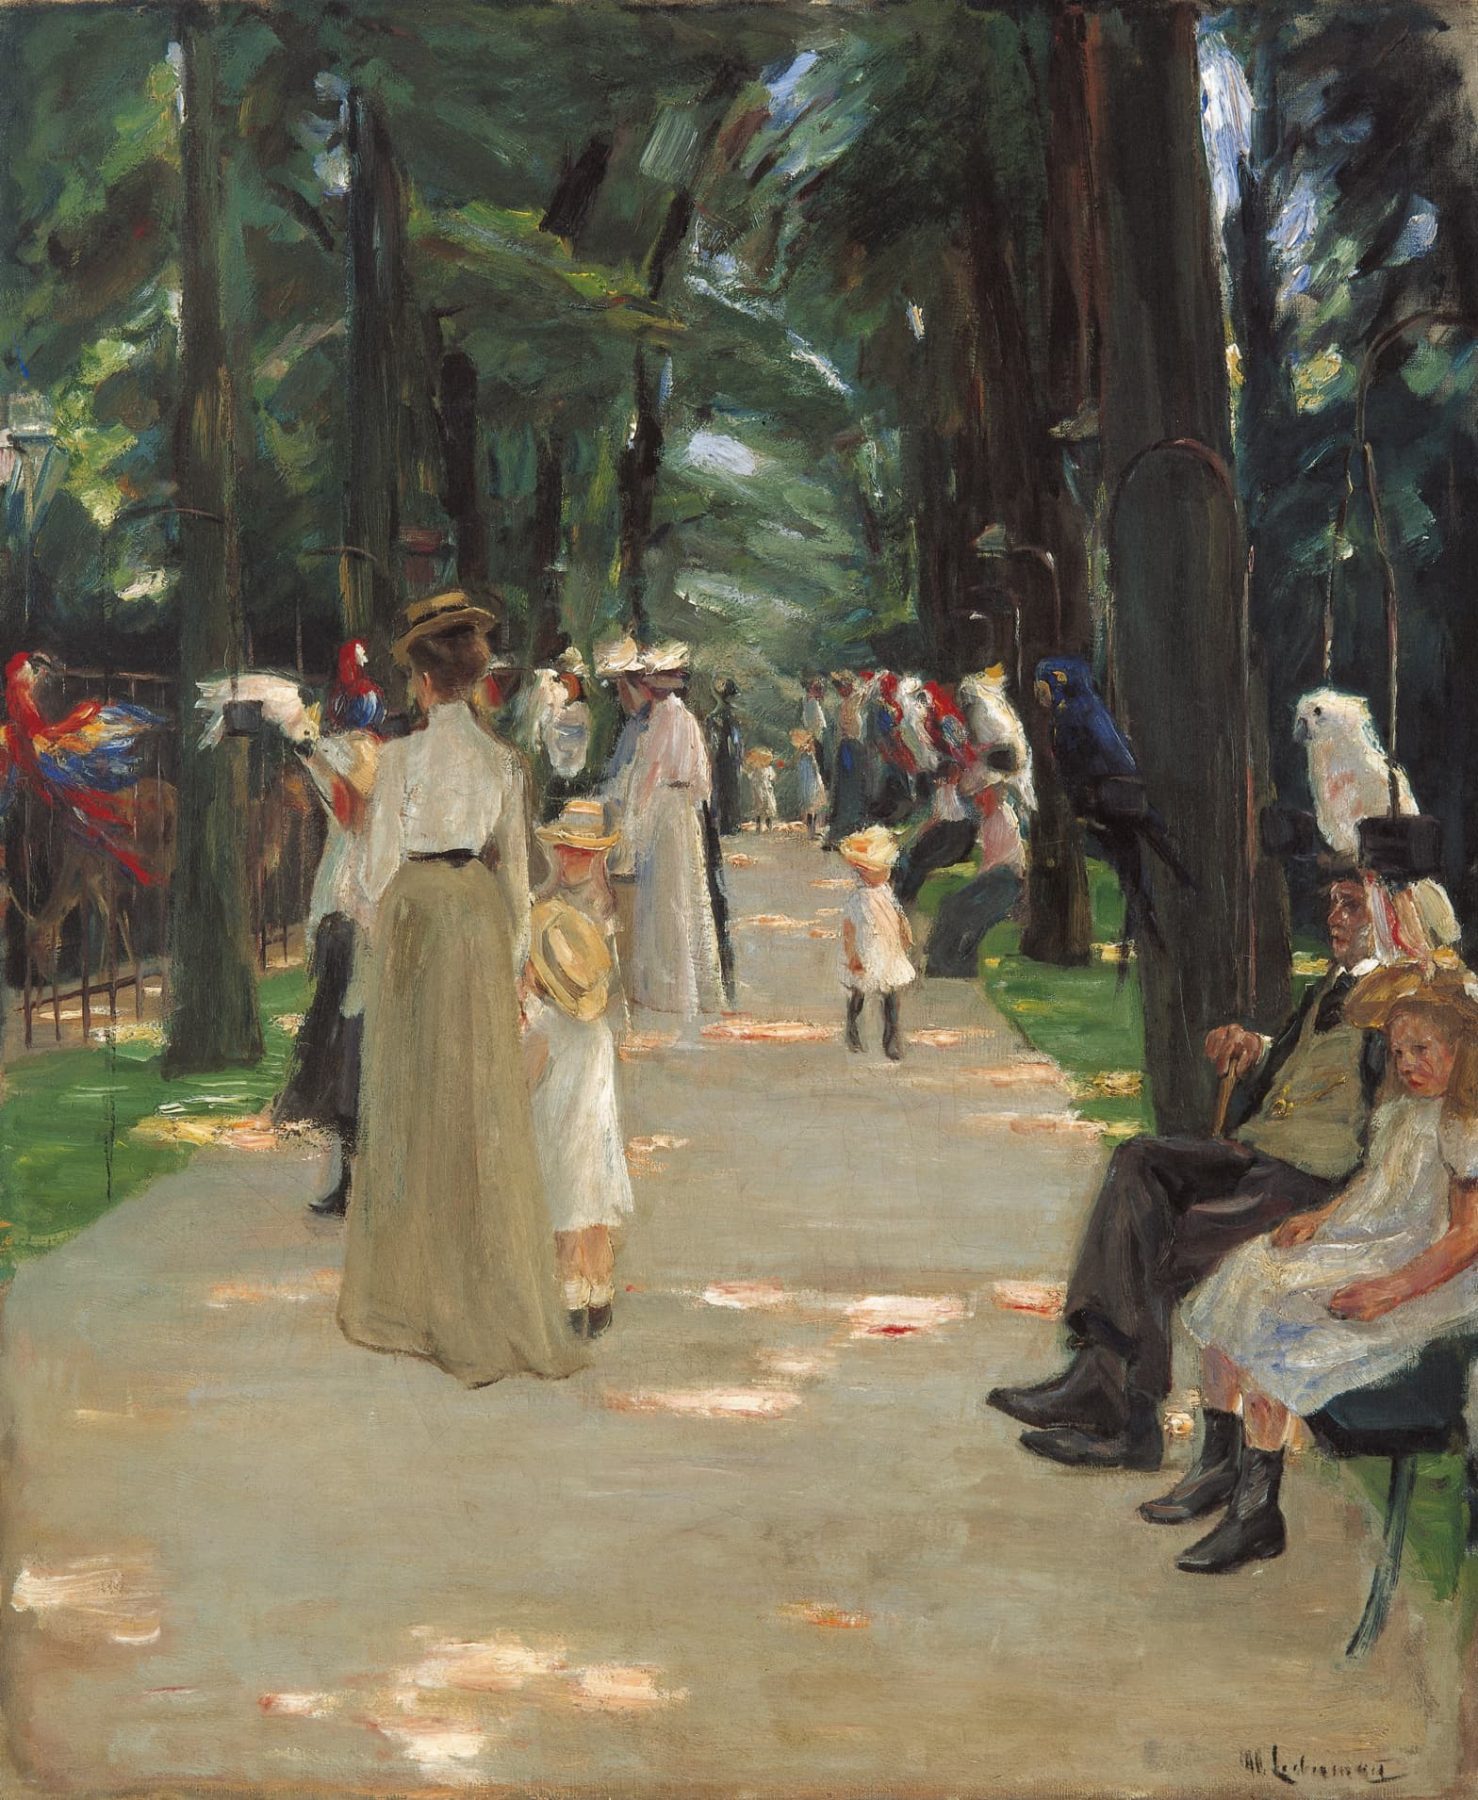 Gemälde von Max Liebermann mit Personen in einem Park Anfang des 20. Jahrhunderts, die flanieren, sitzen oder Papageien am linken Bildrand betrachten